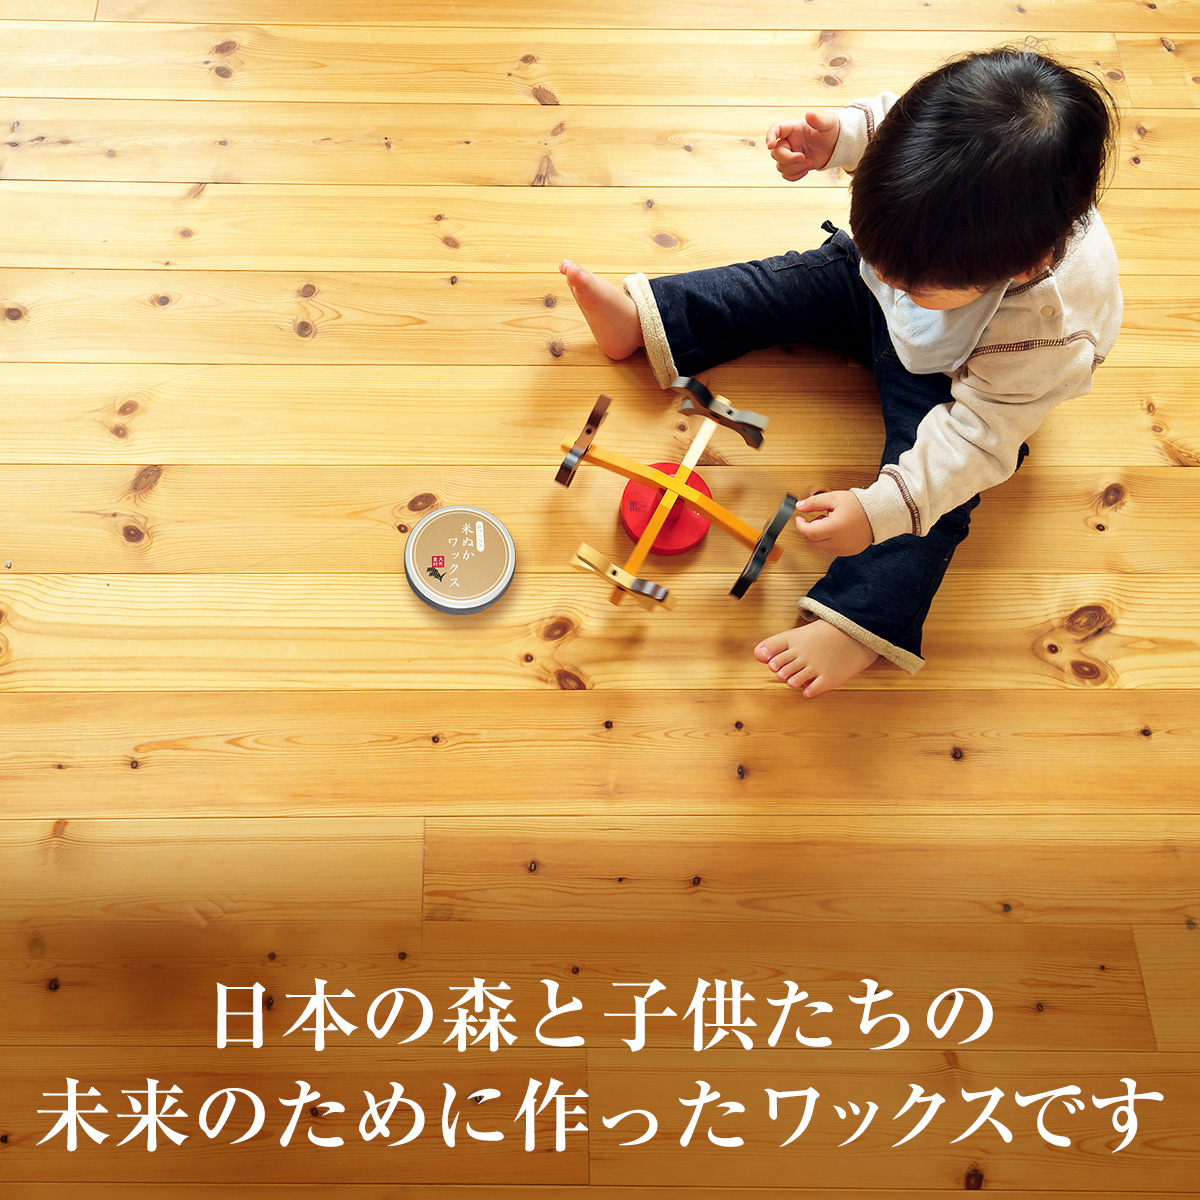 日本の森と子供たちの未来のために作ったワックスです